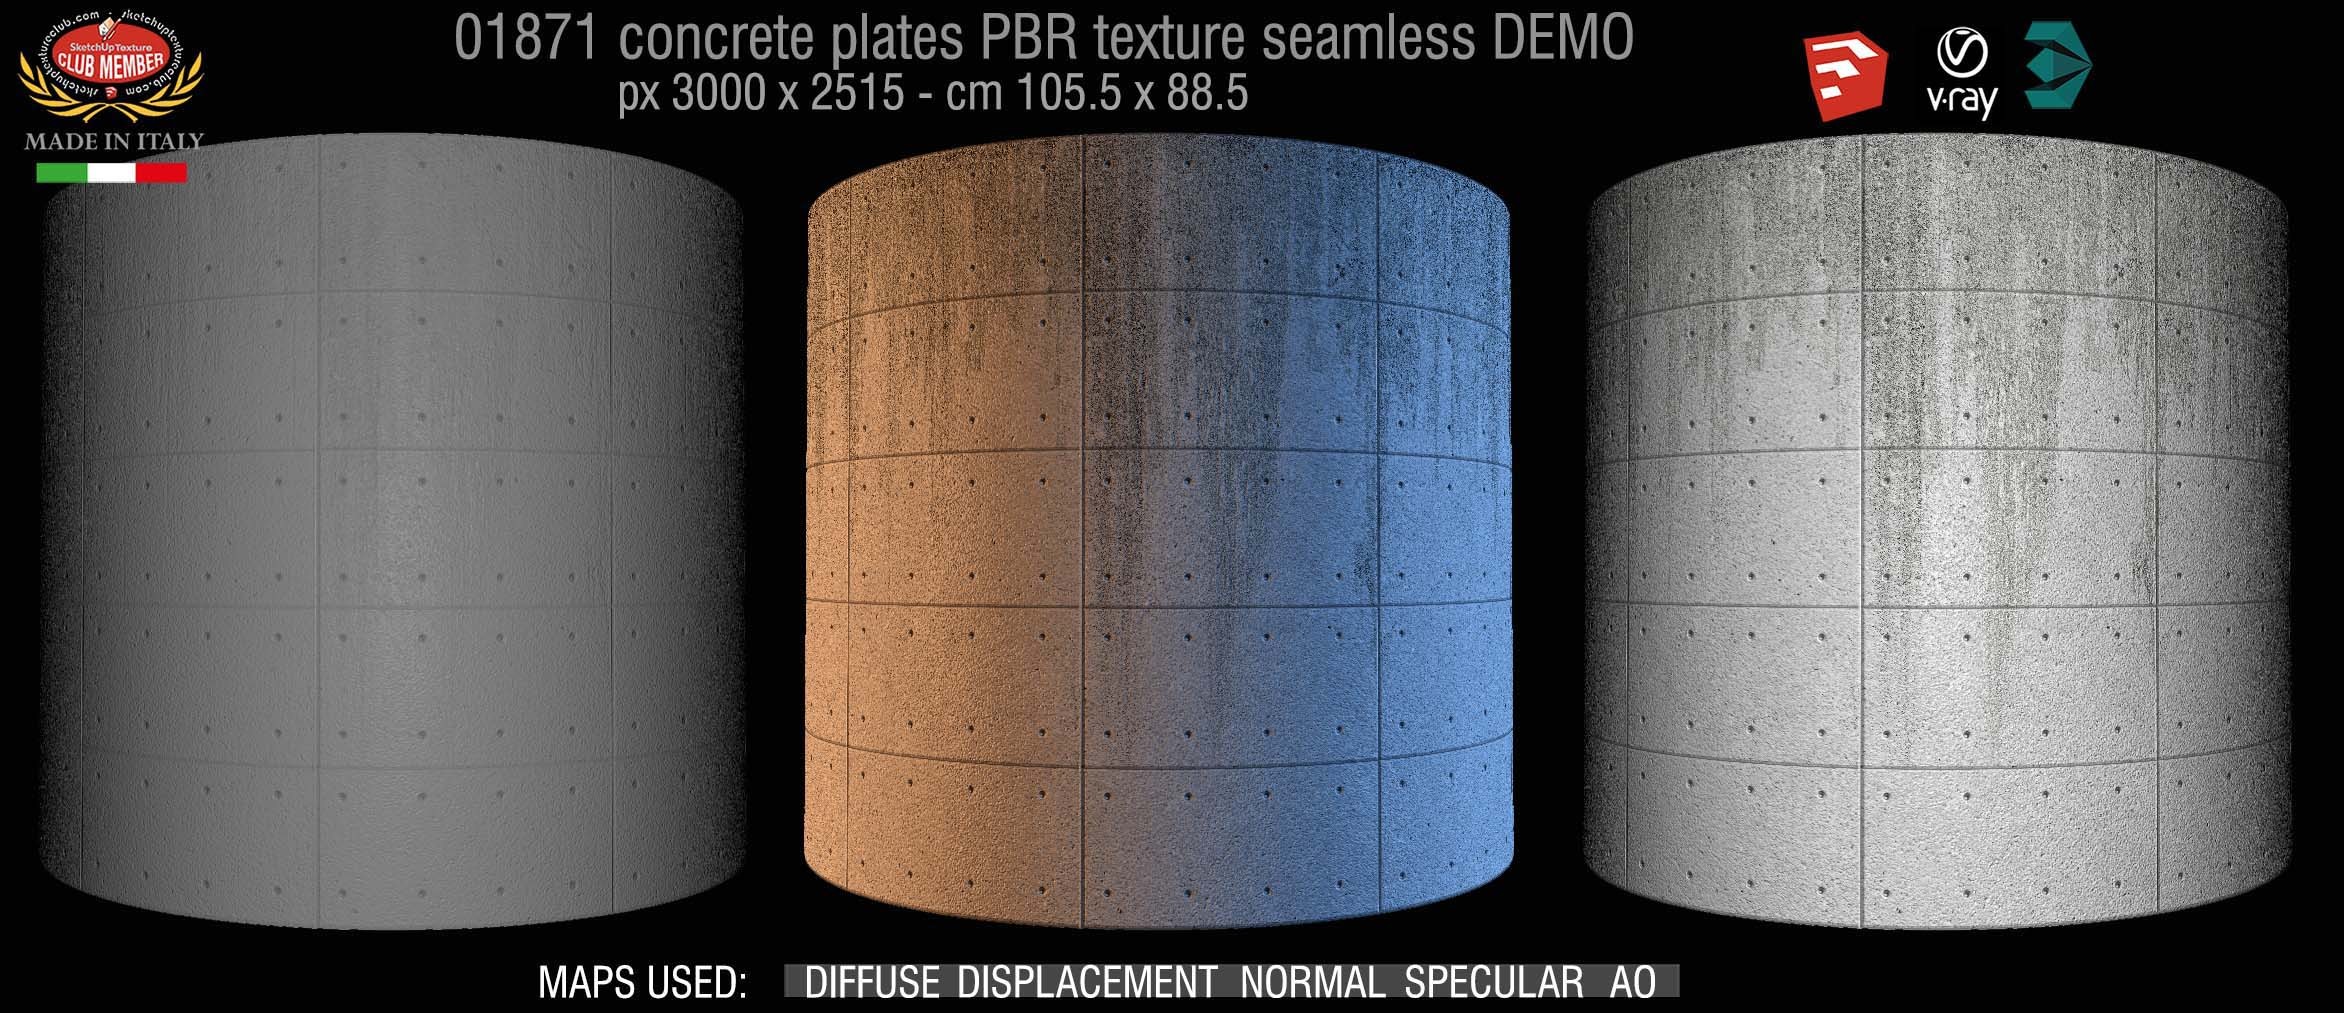 01871 tadao ando concrete plates PBR texture seamless DEMO